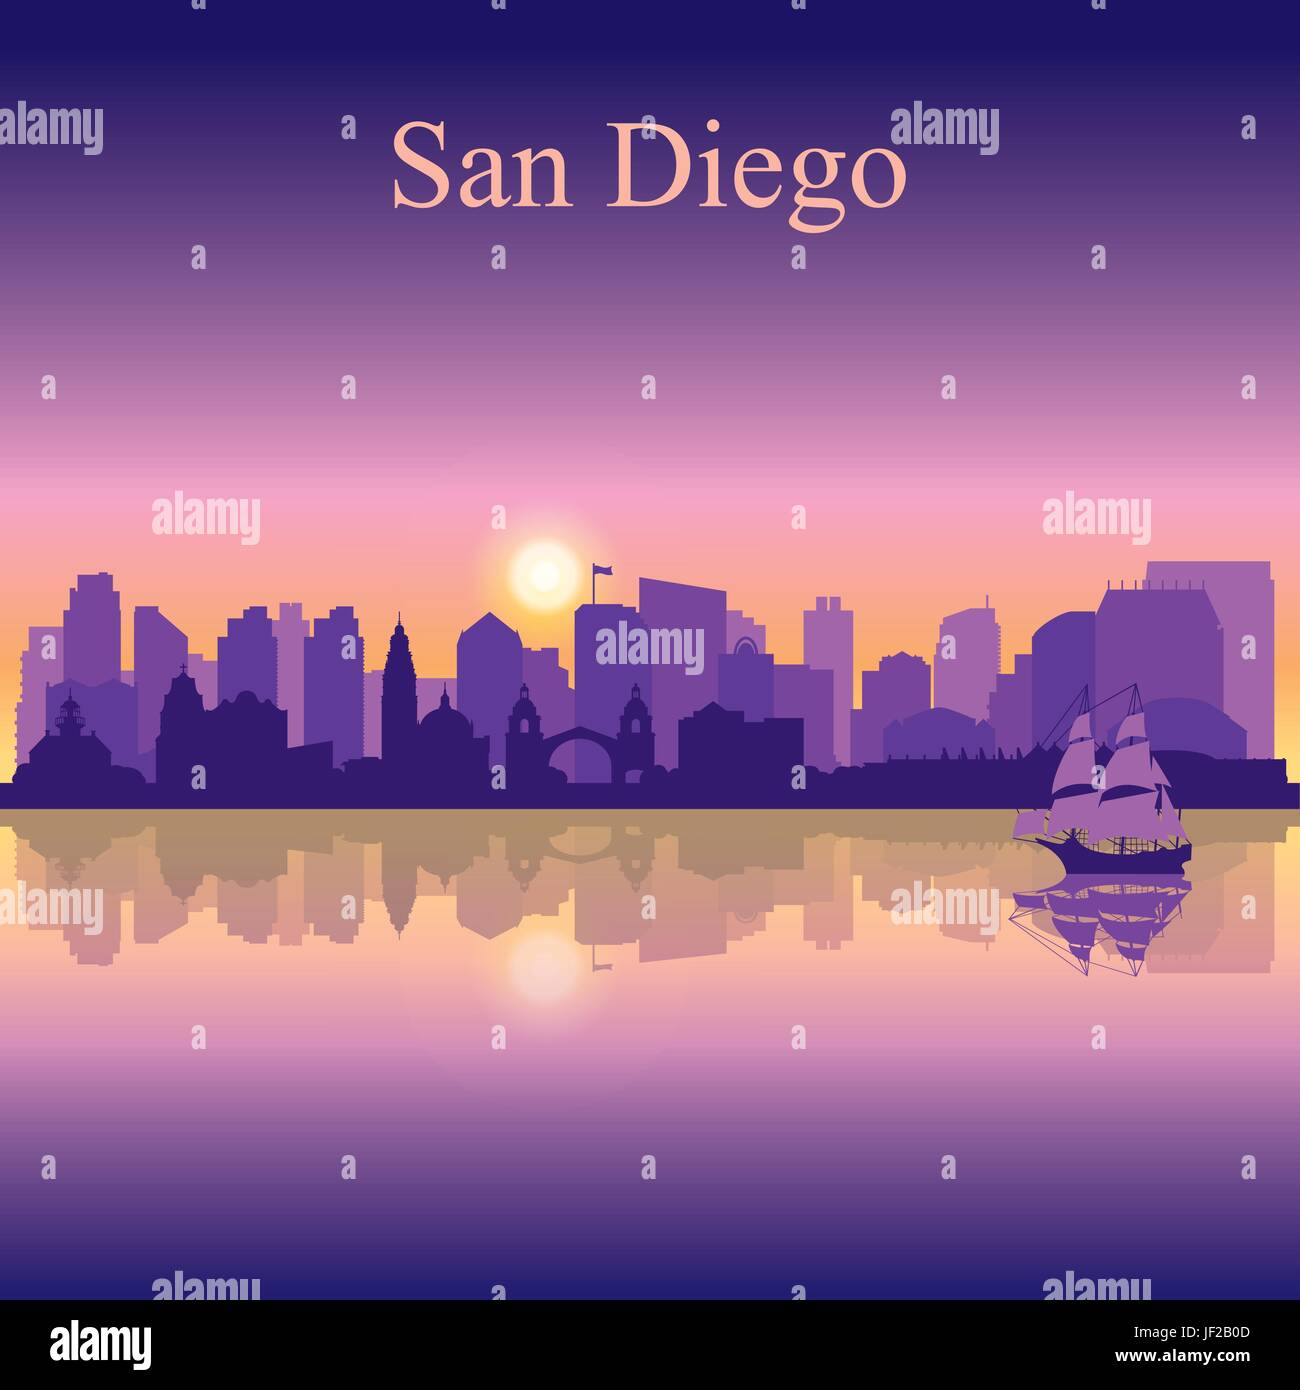 San Diego-Silhouette auf Sonnenuntergang Hintergrund, Vektor-illustration Stock Vektor